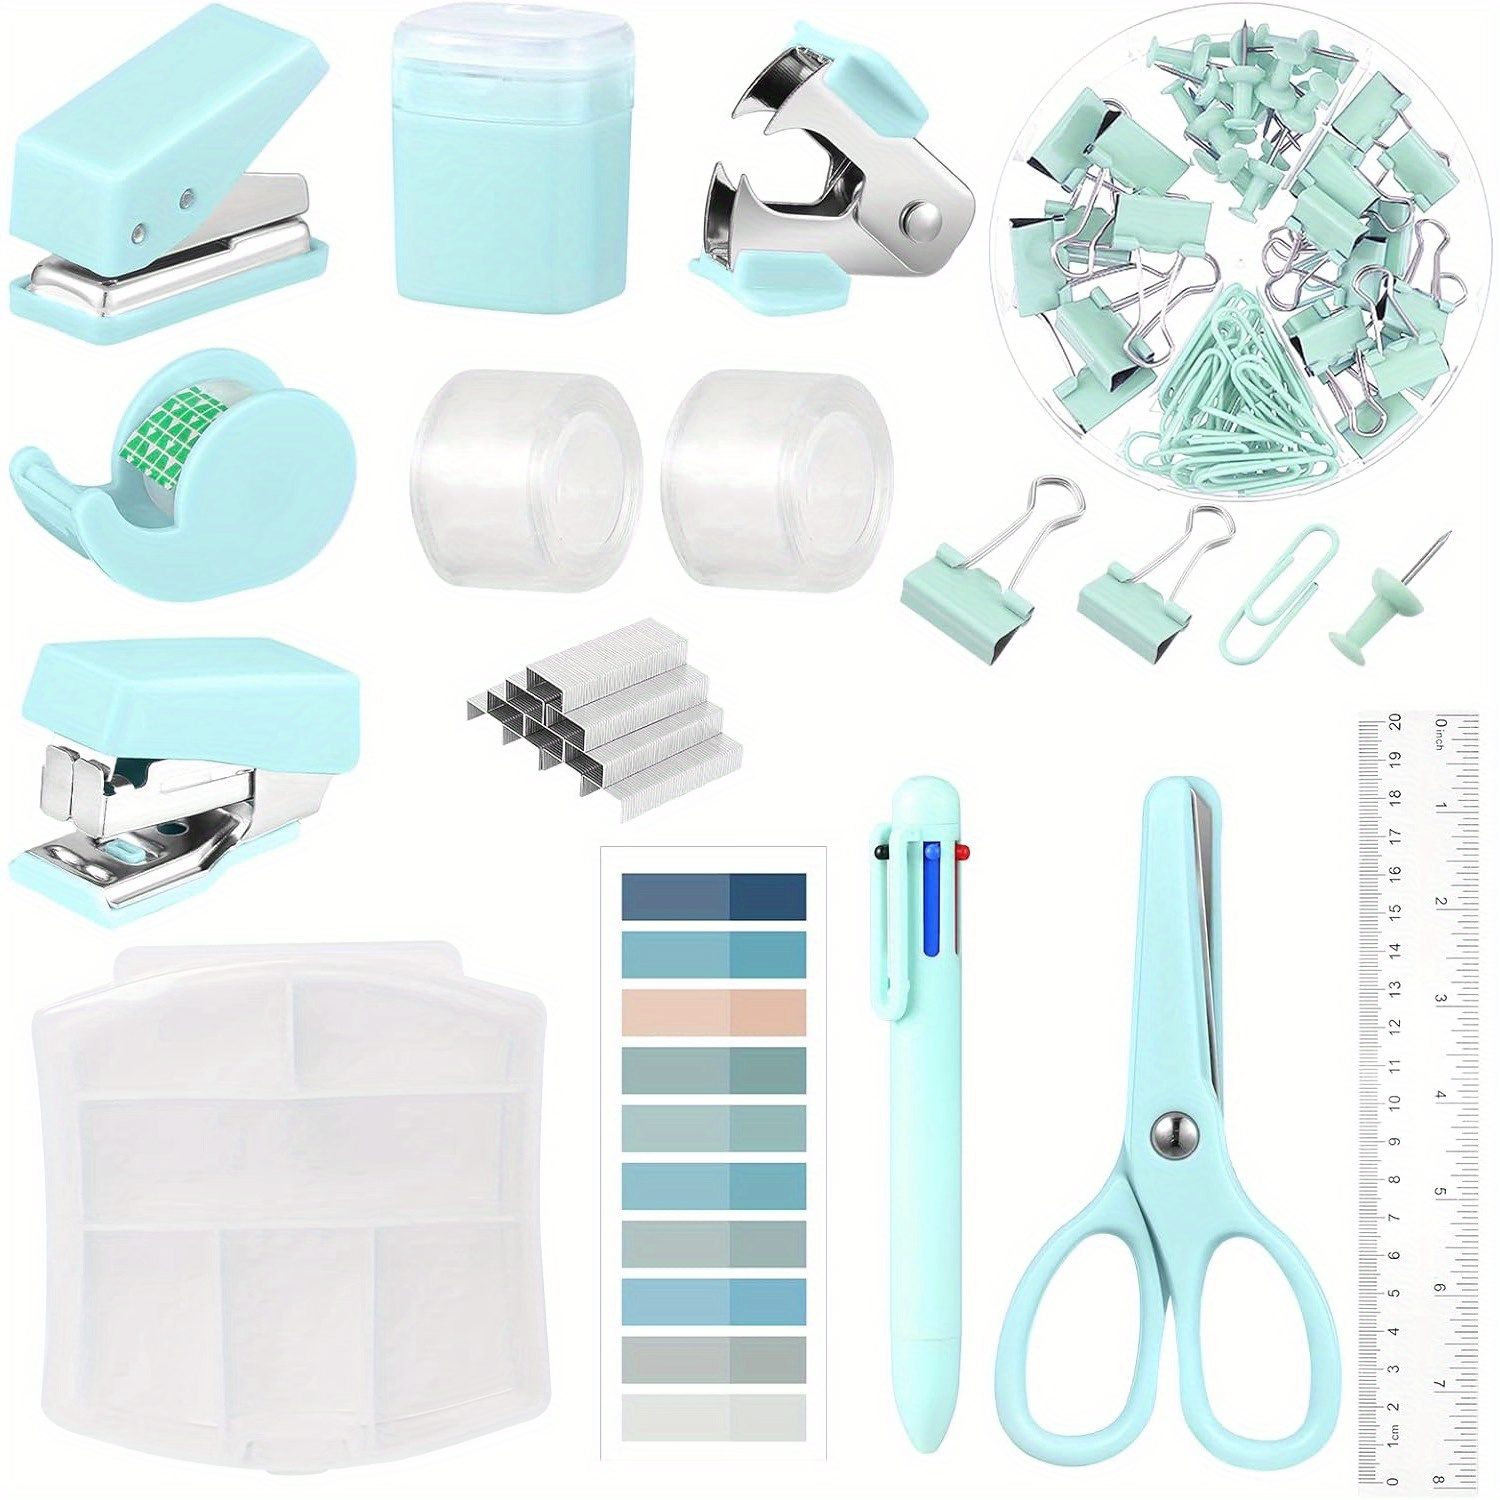 Complete Office Supplies Set - Acrylic Stapler, Tape Holder, Pen Holder,  Ballpoint Pens, Scissors, Binder, Paper Clip & Staples!